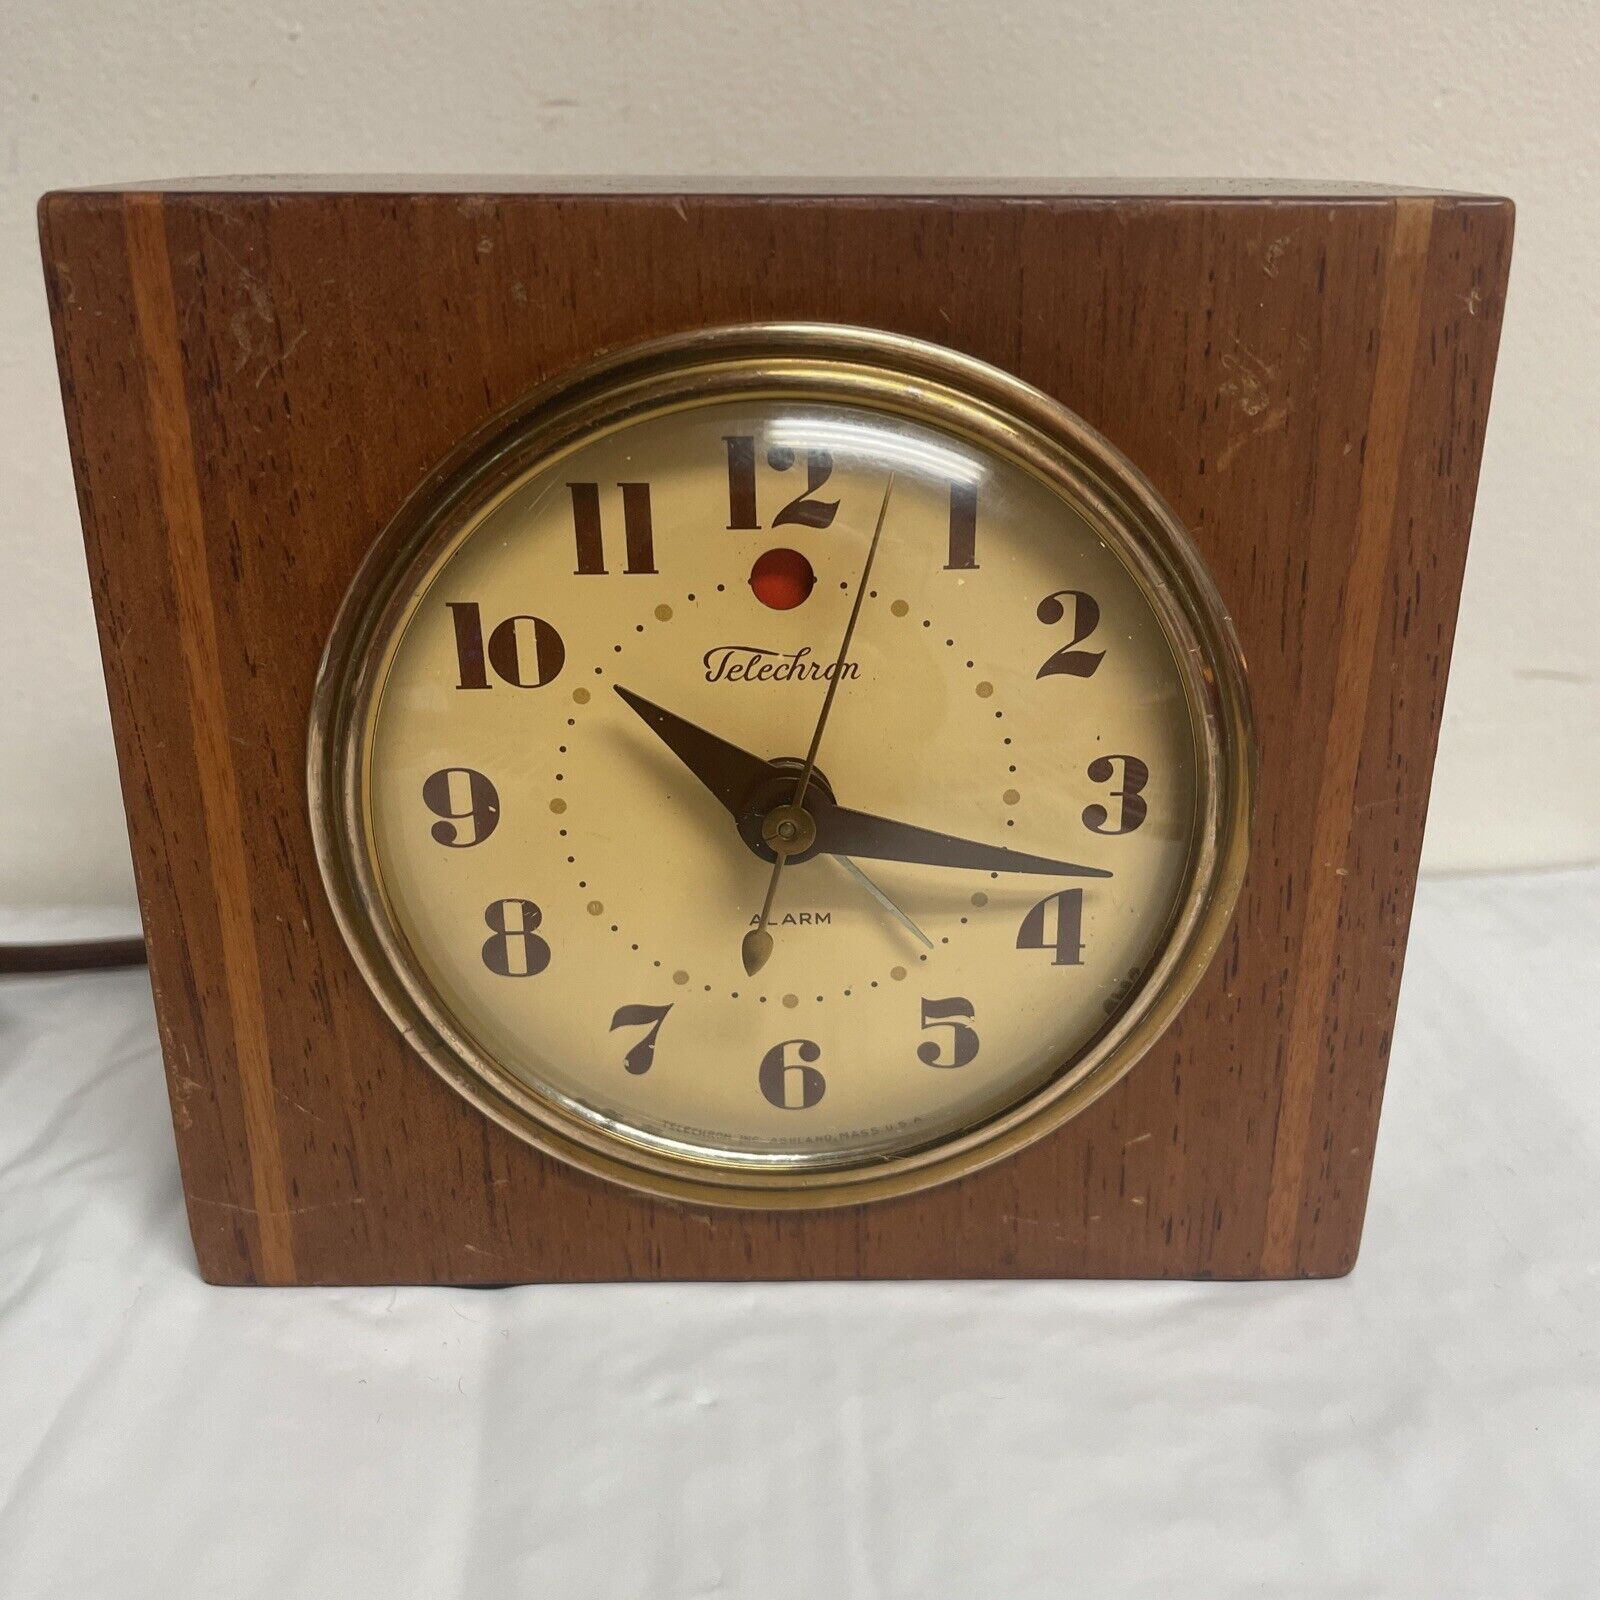 Vintage Telechron Wood Electric Alarm Desk Clock Model 7H139 Still Keeps Time